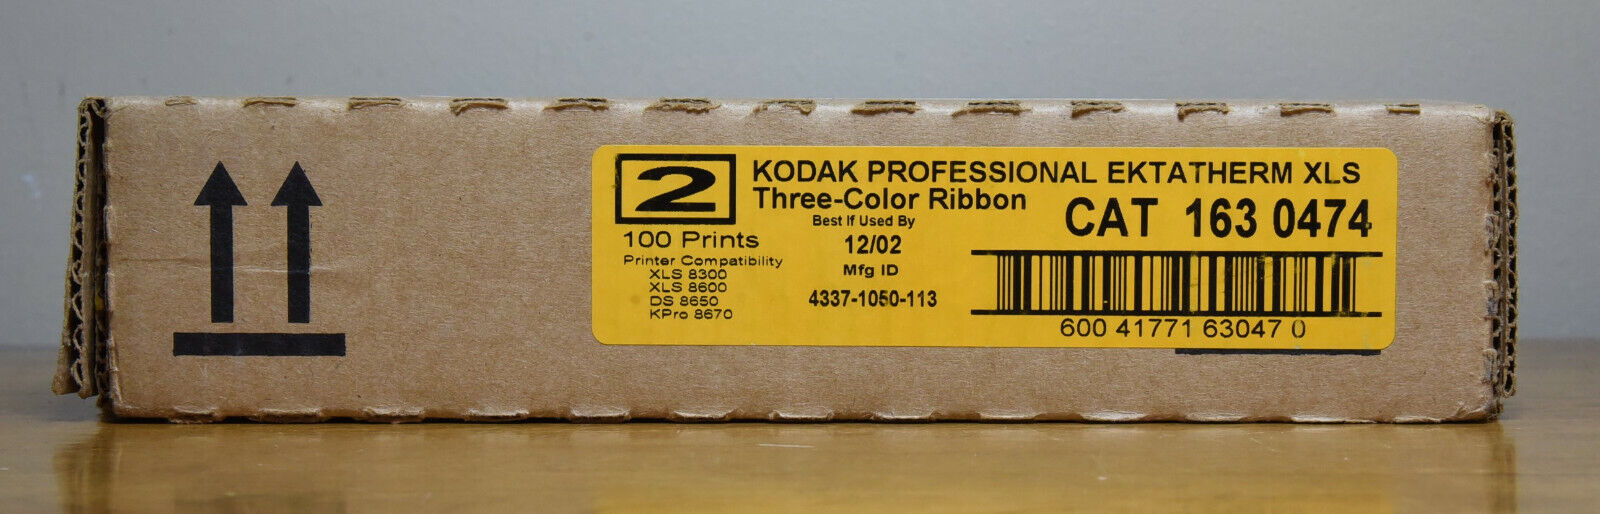 2x KODAK Ektatherm XLS Three-Color Ribbons 200 Prints Cat 163 0474 12/02 Sealed